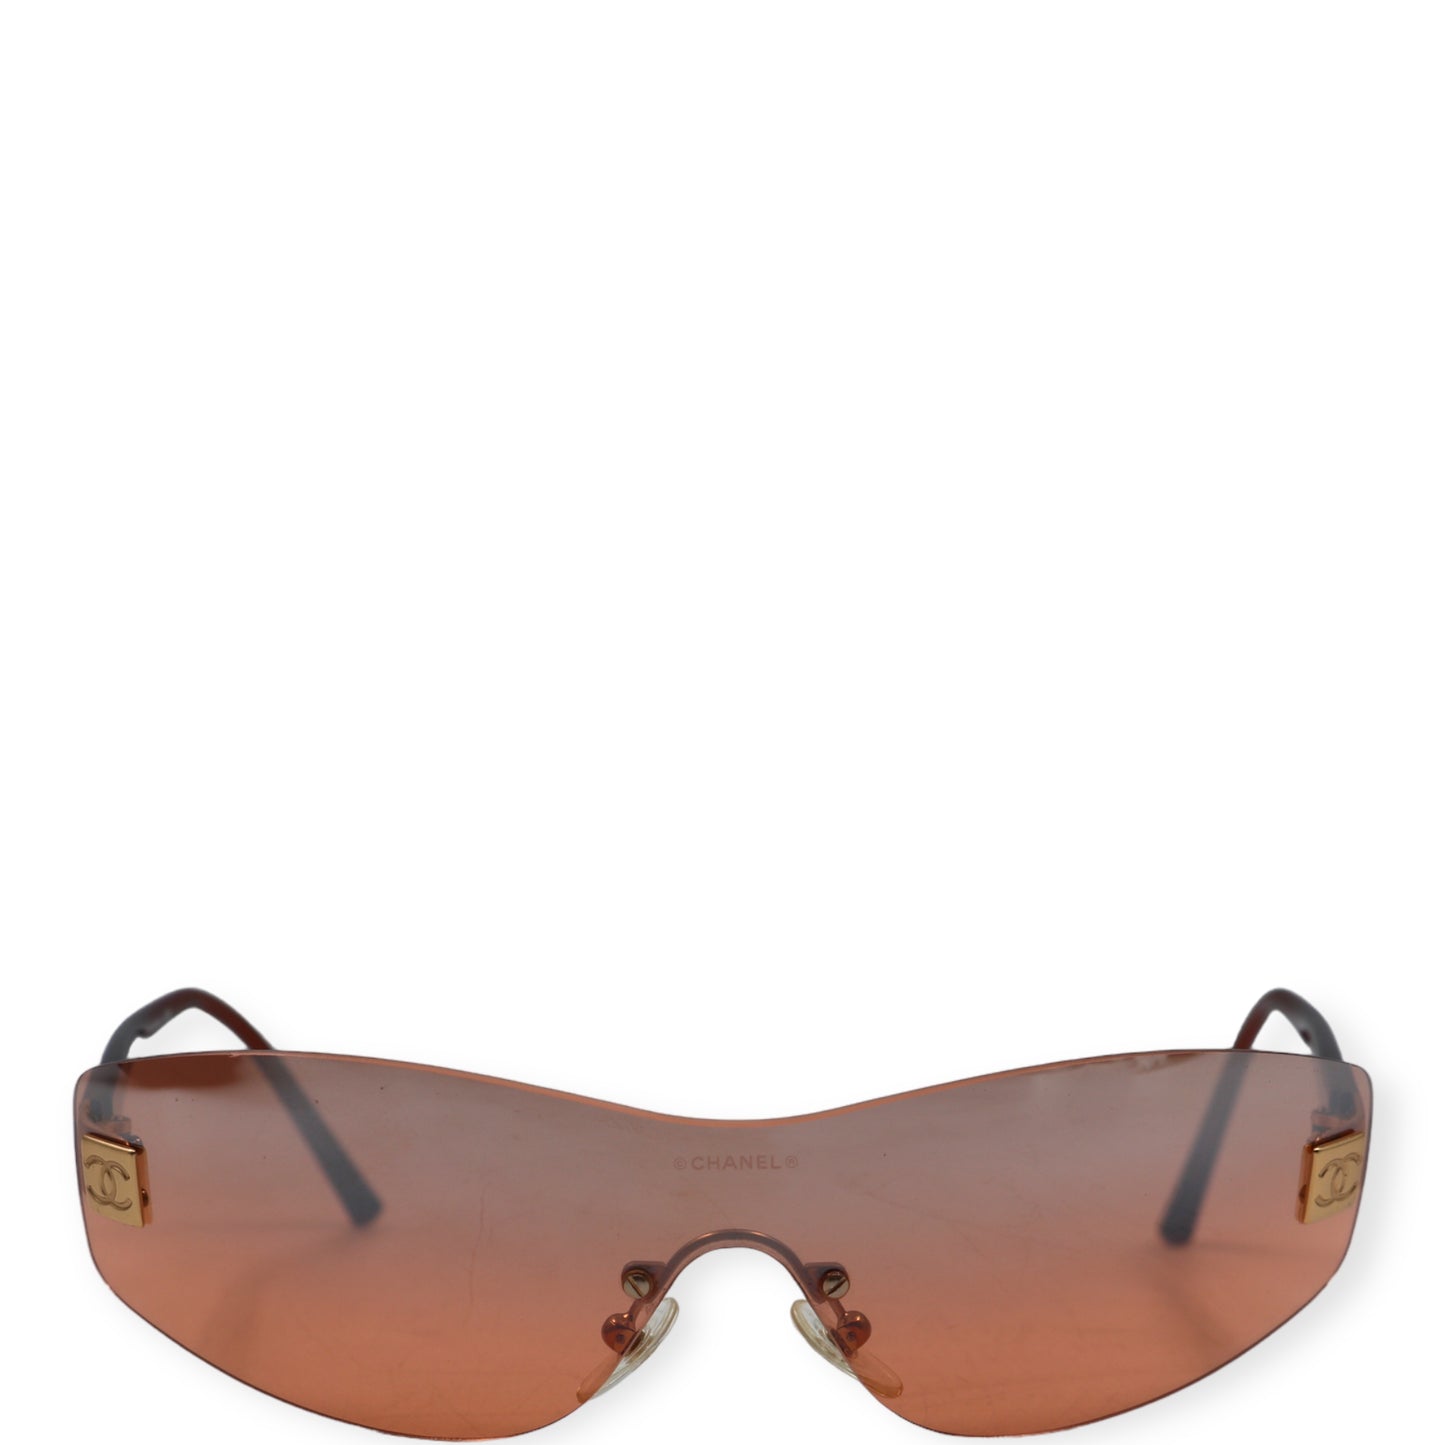 Chanel Sonnenbrille braun